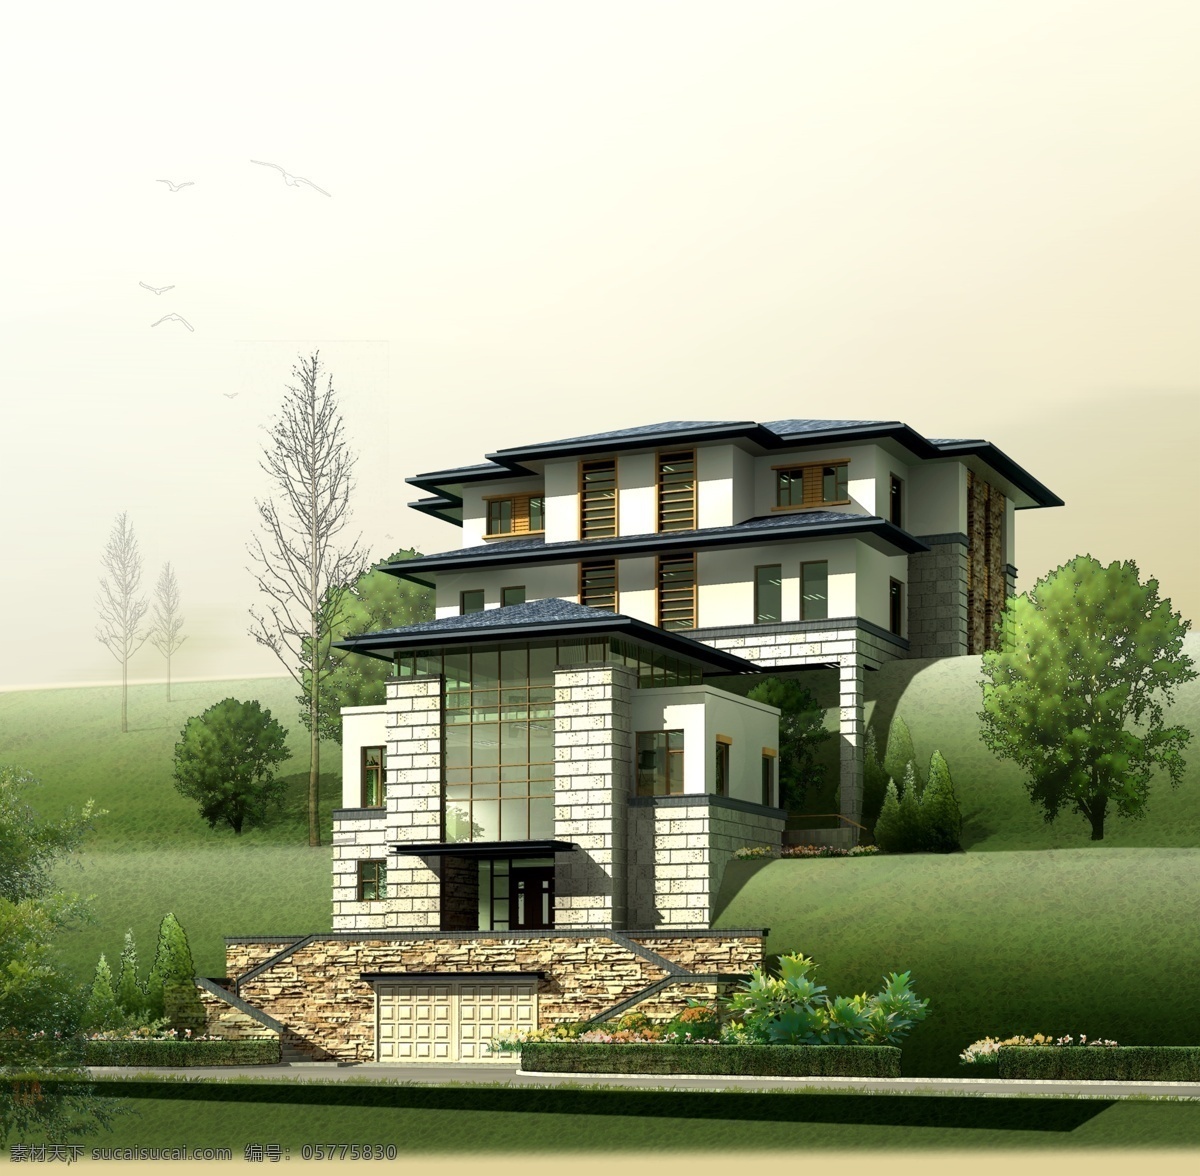 别墅 景观 效果图 房屋 建筑物 草地 树木 飞鸟 马路 灰色天空 景观设计 环境设计